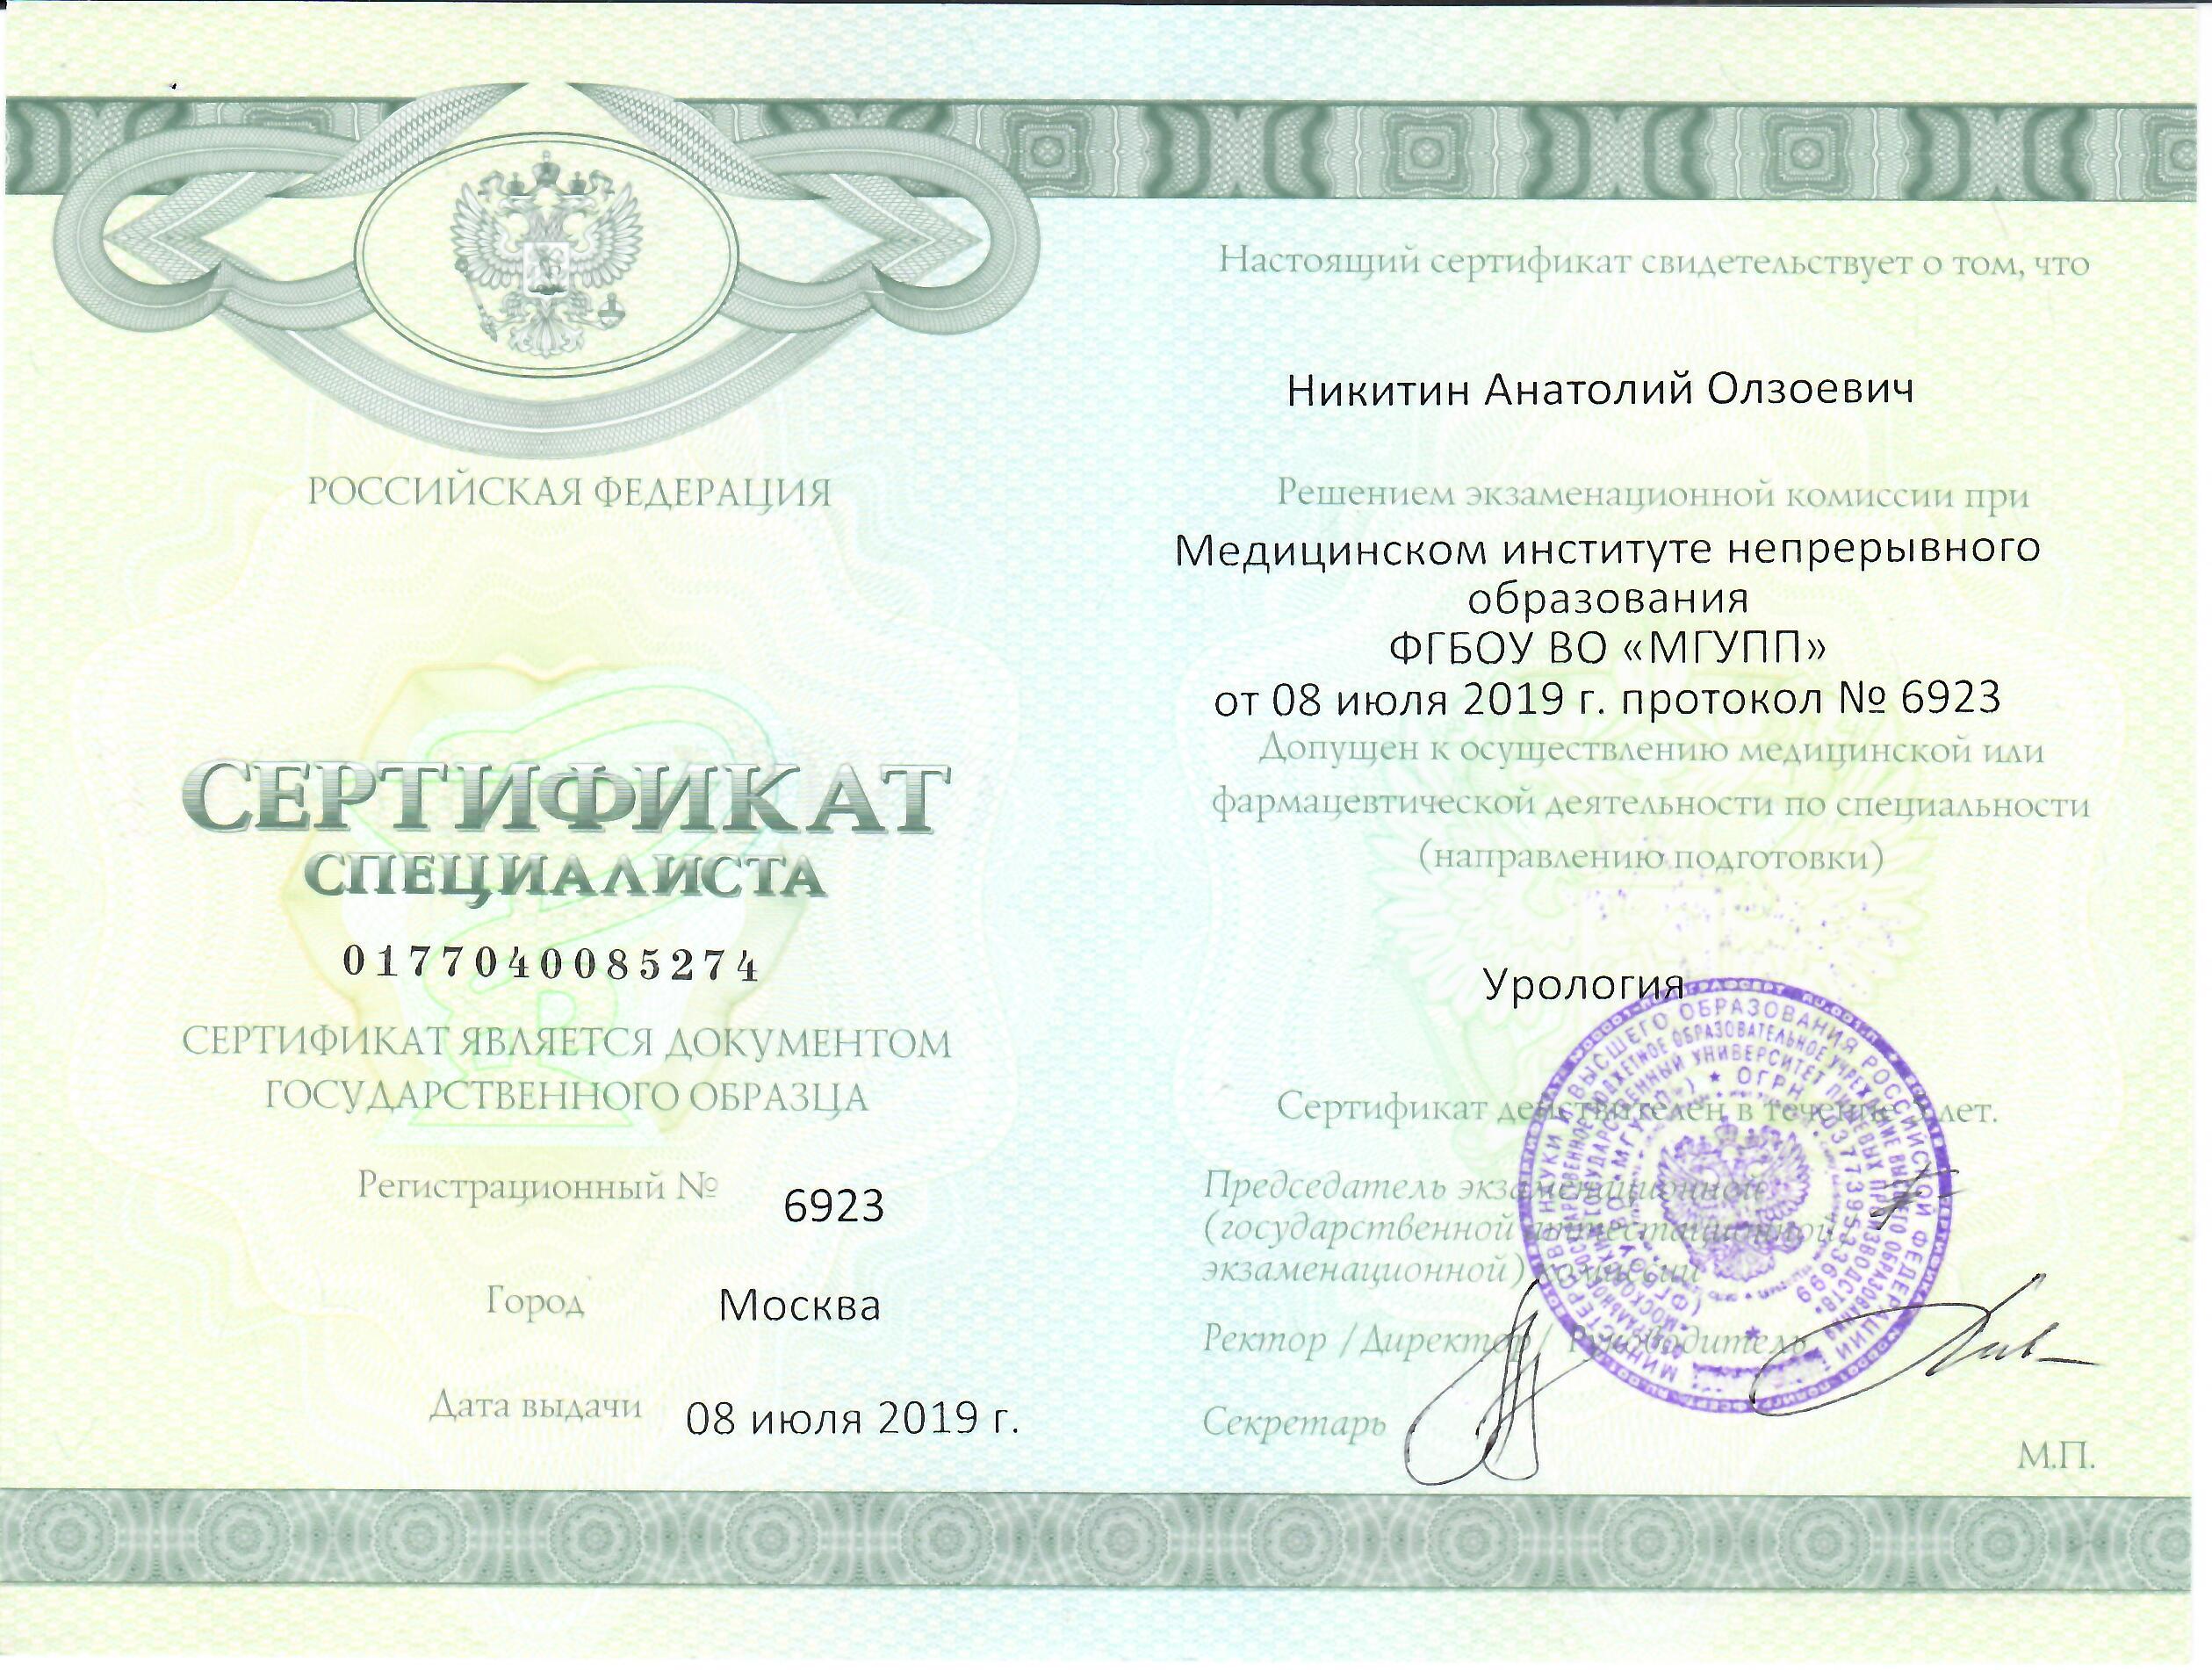 Сертификат Урология Никитин Анатолий Олзоевич